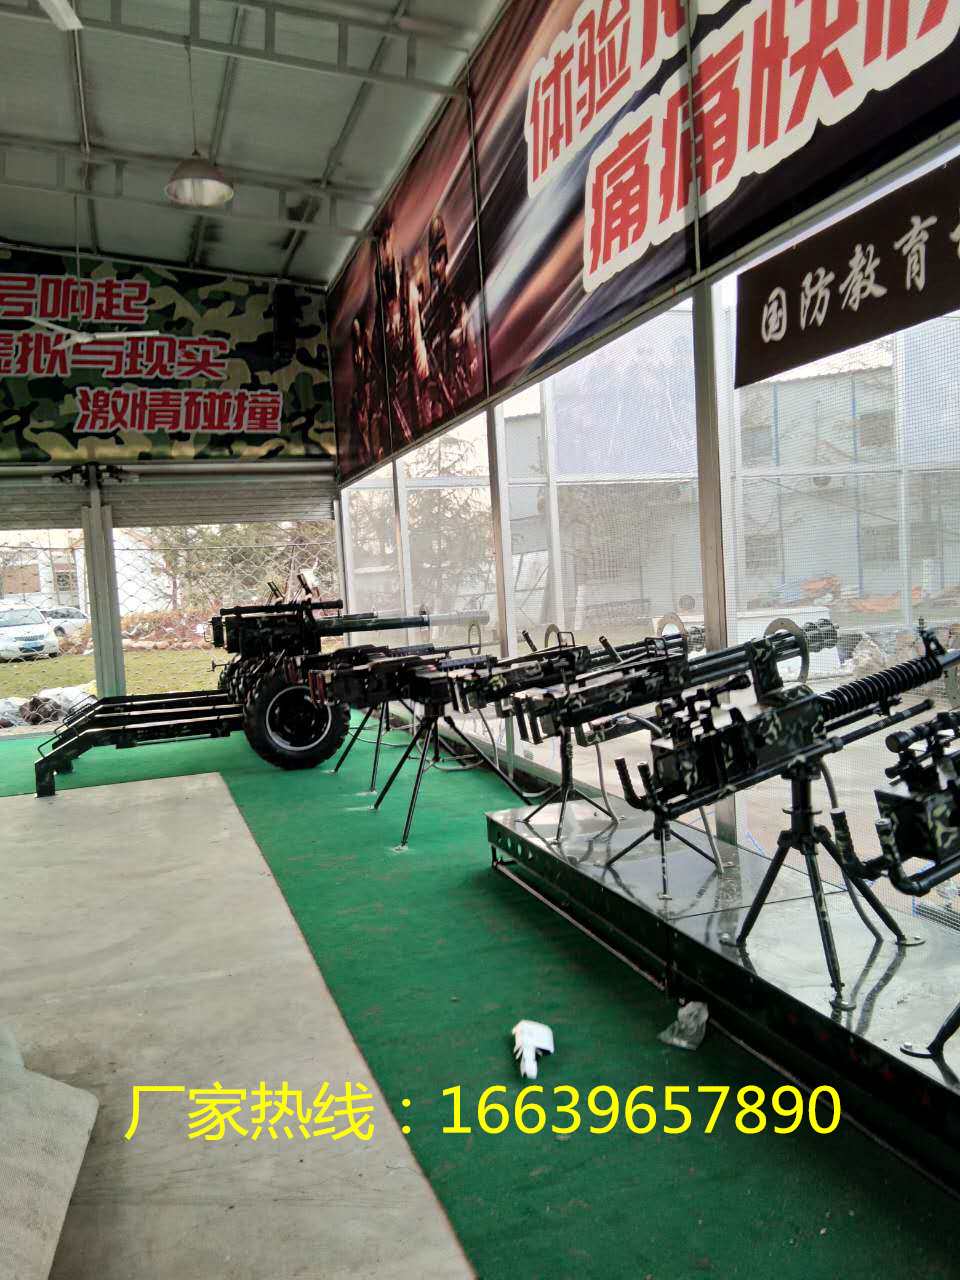 儿童乐园设备价格-振宇协和气炮厂家销售-金属材质游艺气炮打靶射击